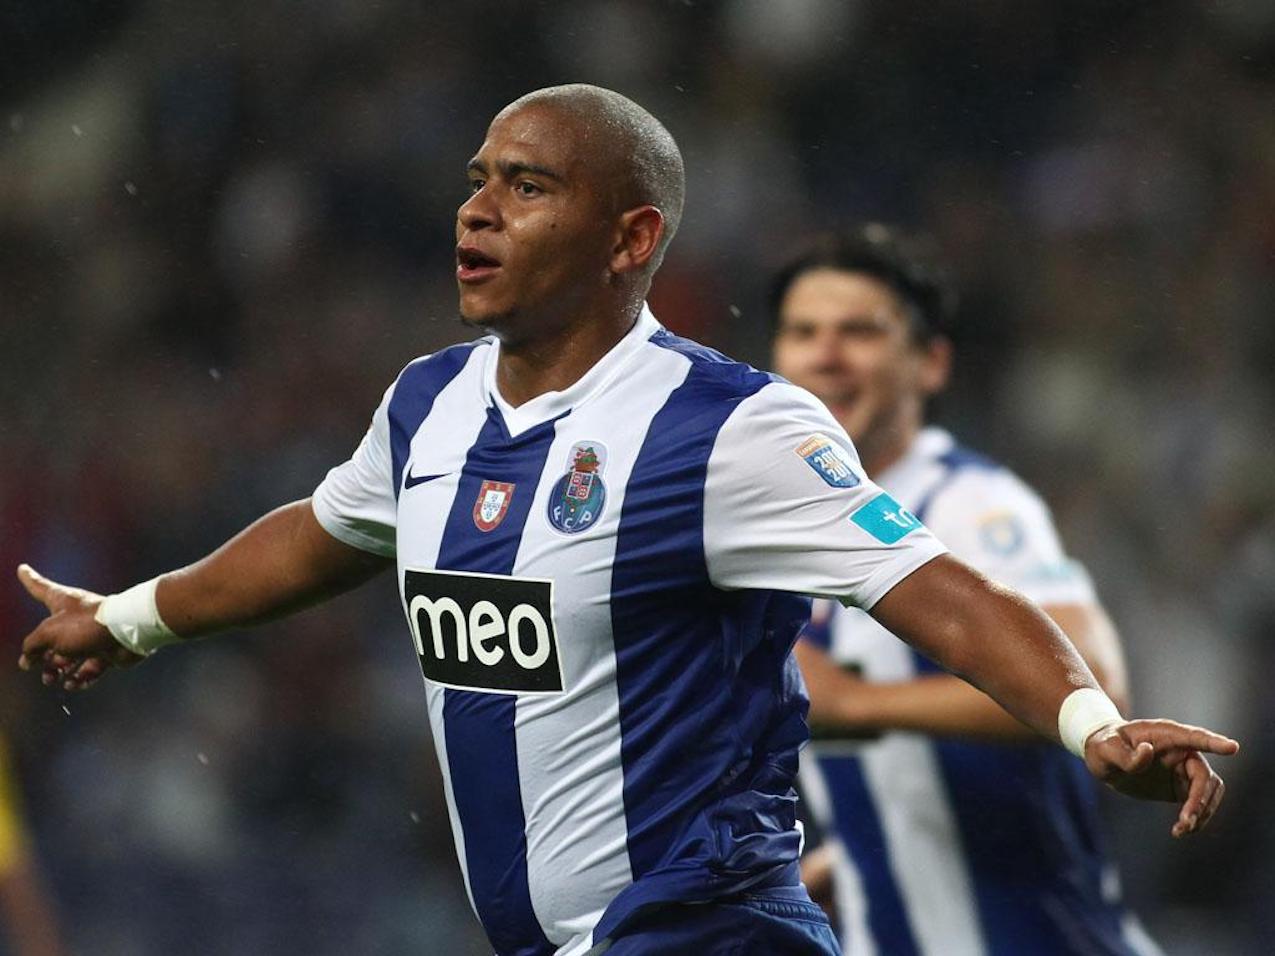 Walter perdeu mais de 10 quilos num mês: ex-FC Porto cumpriu